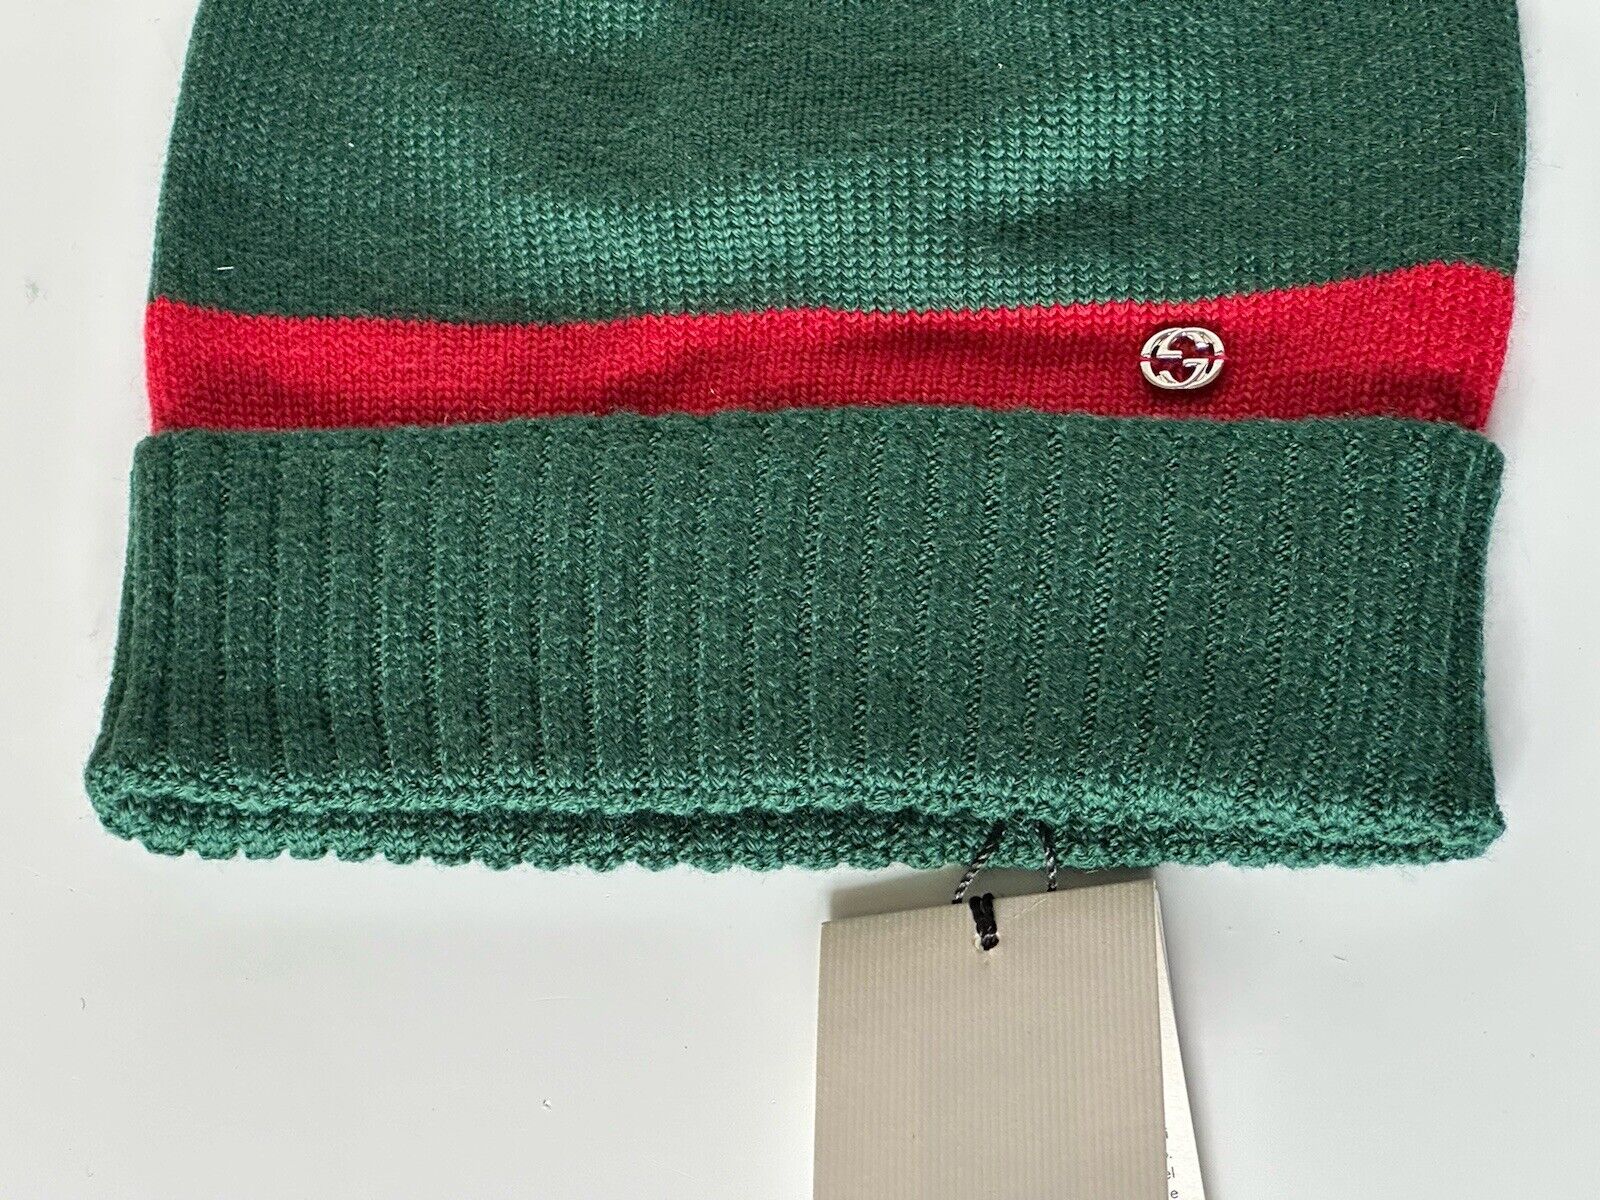 Neu mit Etikett: Gucci Strickmütze aus Wolle in Grün/Rot, mittelgroß (58 cm), hergestellt in Italien, 494598 